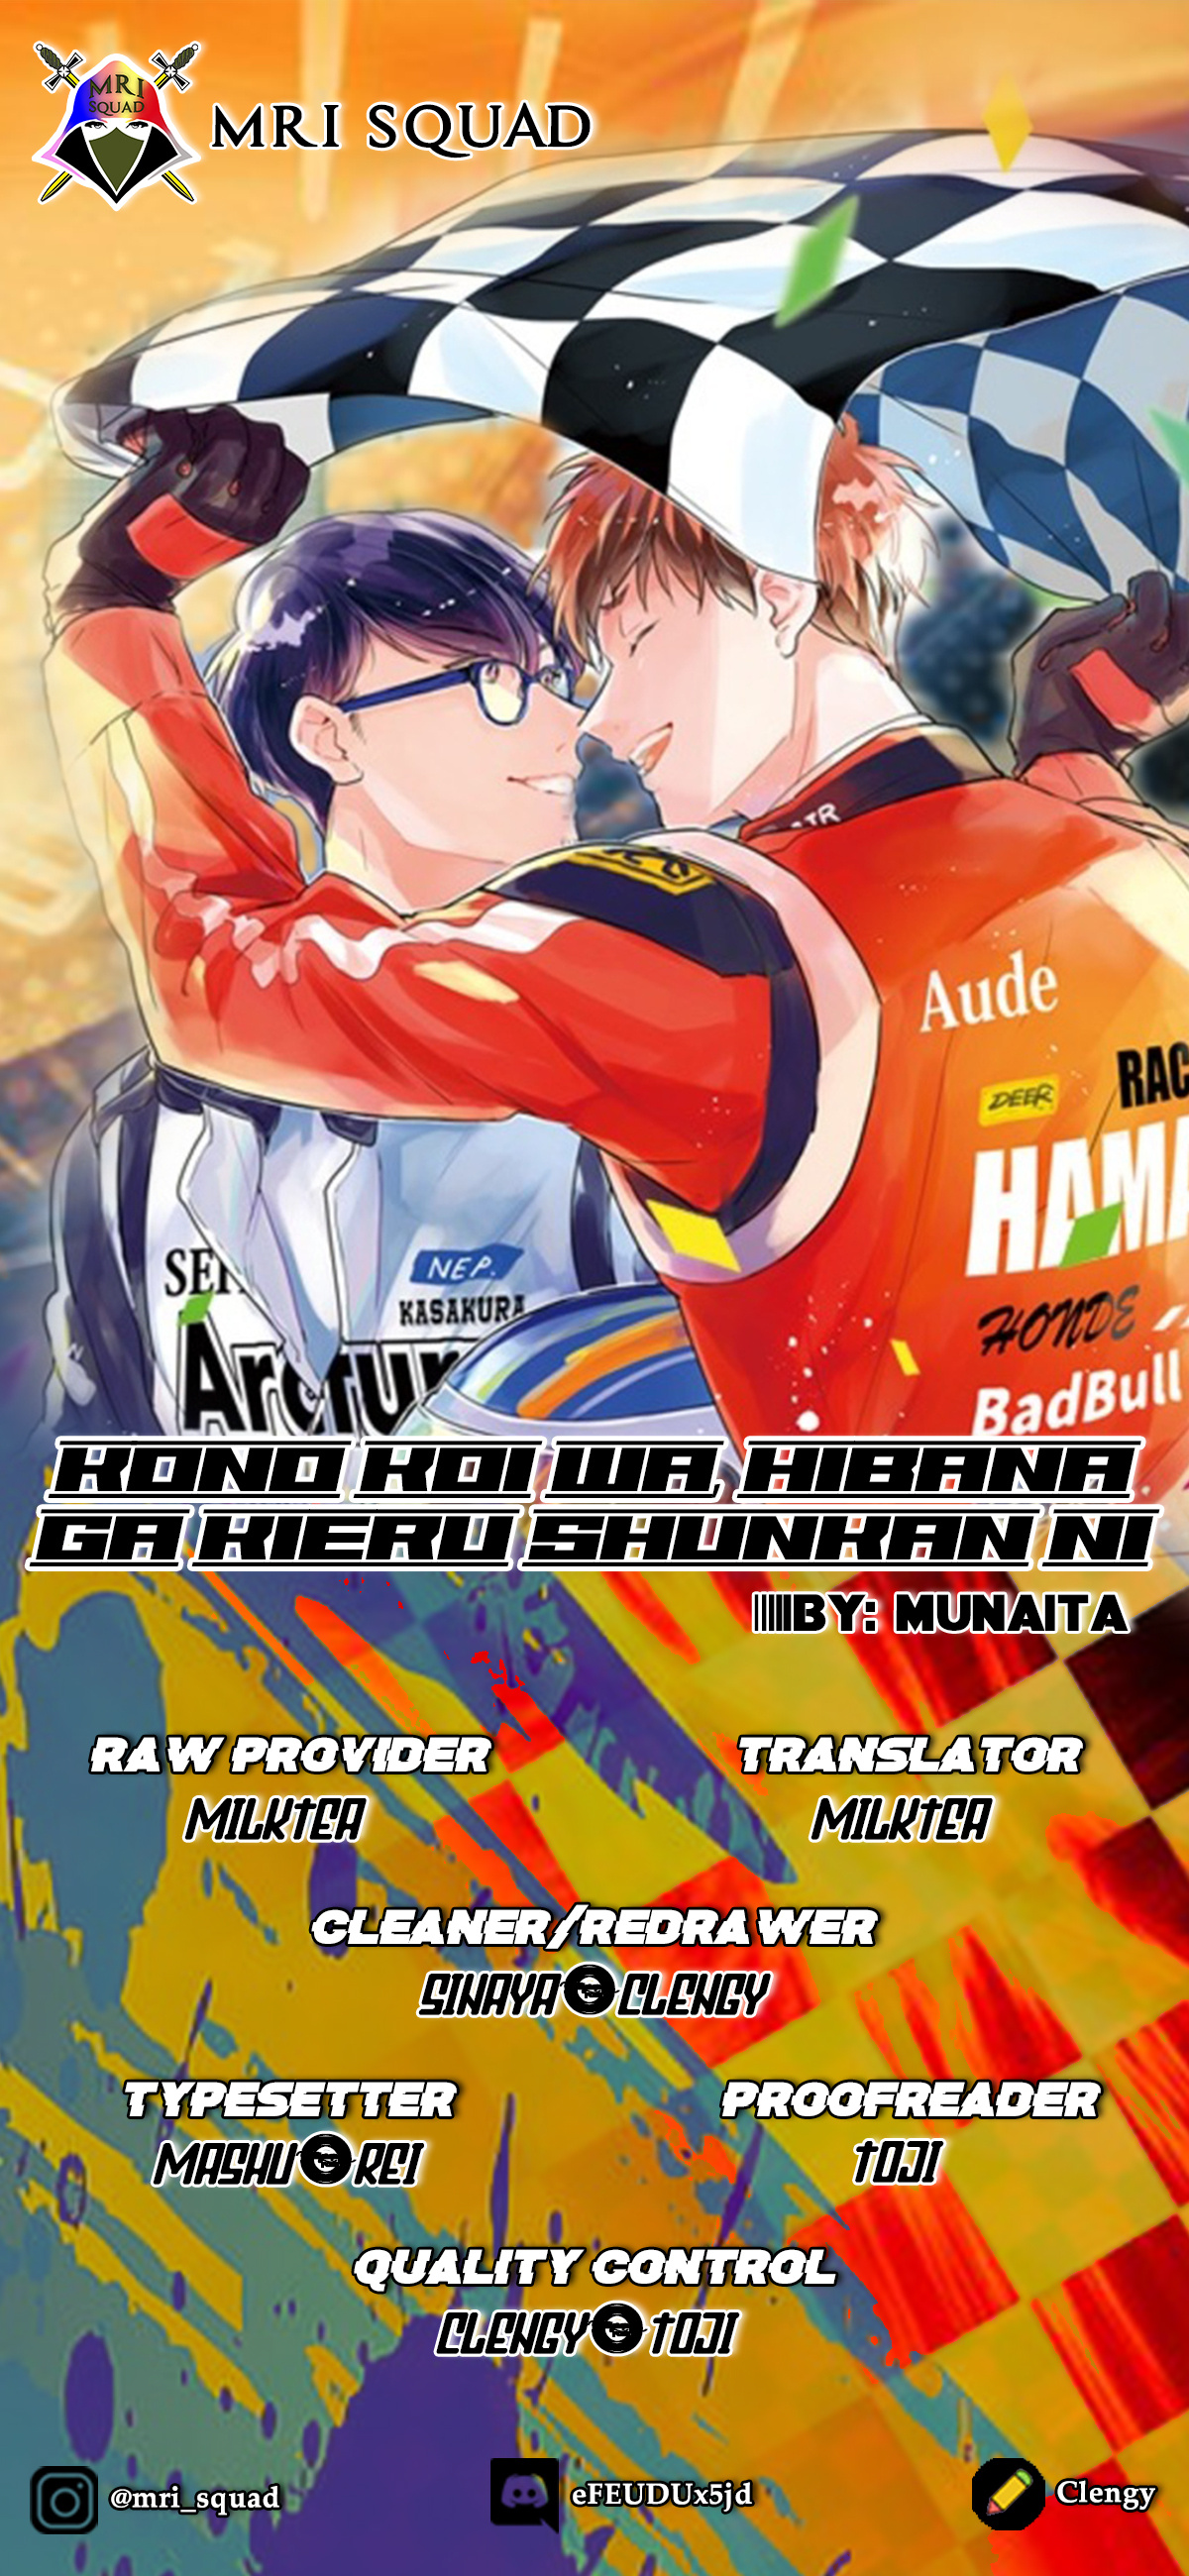 Kono Koi Wa, Hibana Ga Kieru Shunkan Ni Vol.1 Chapter 1 - Picture 2